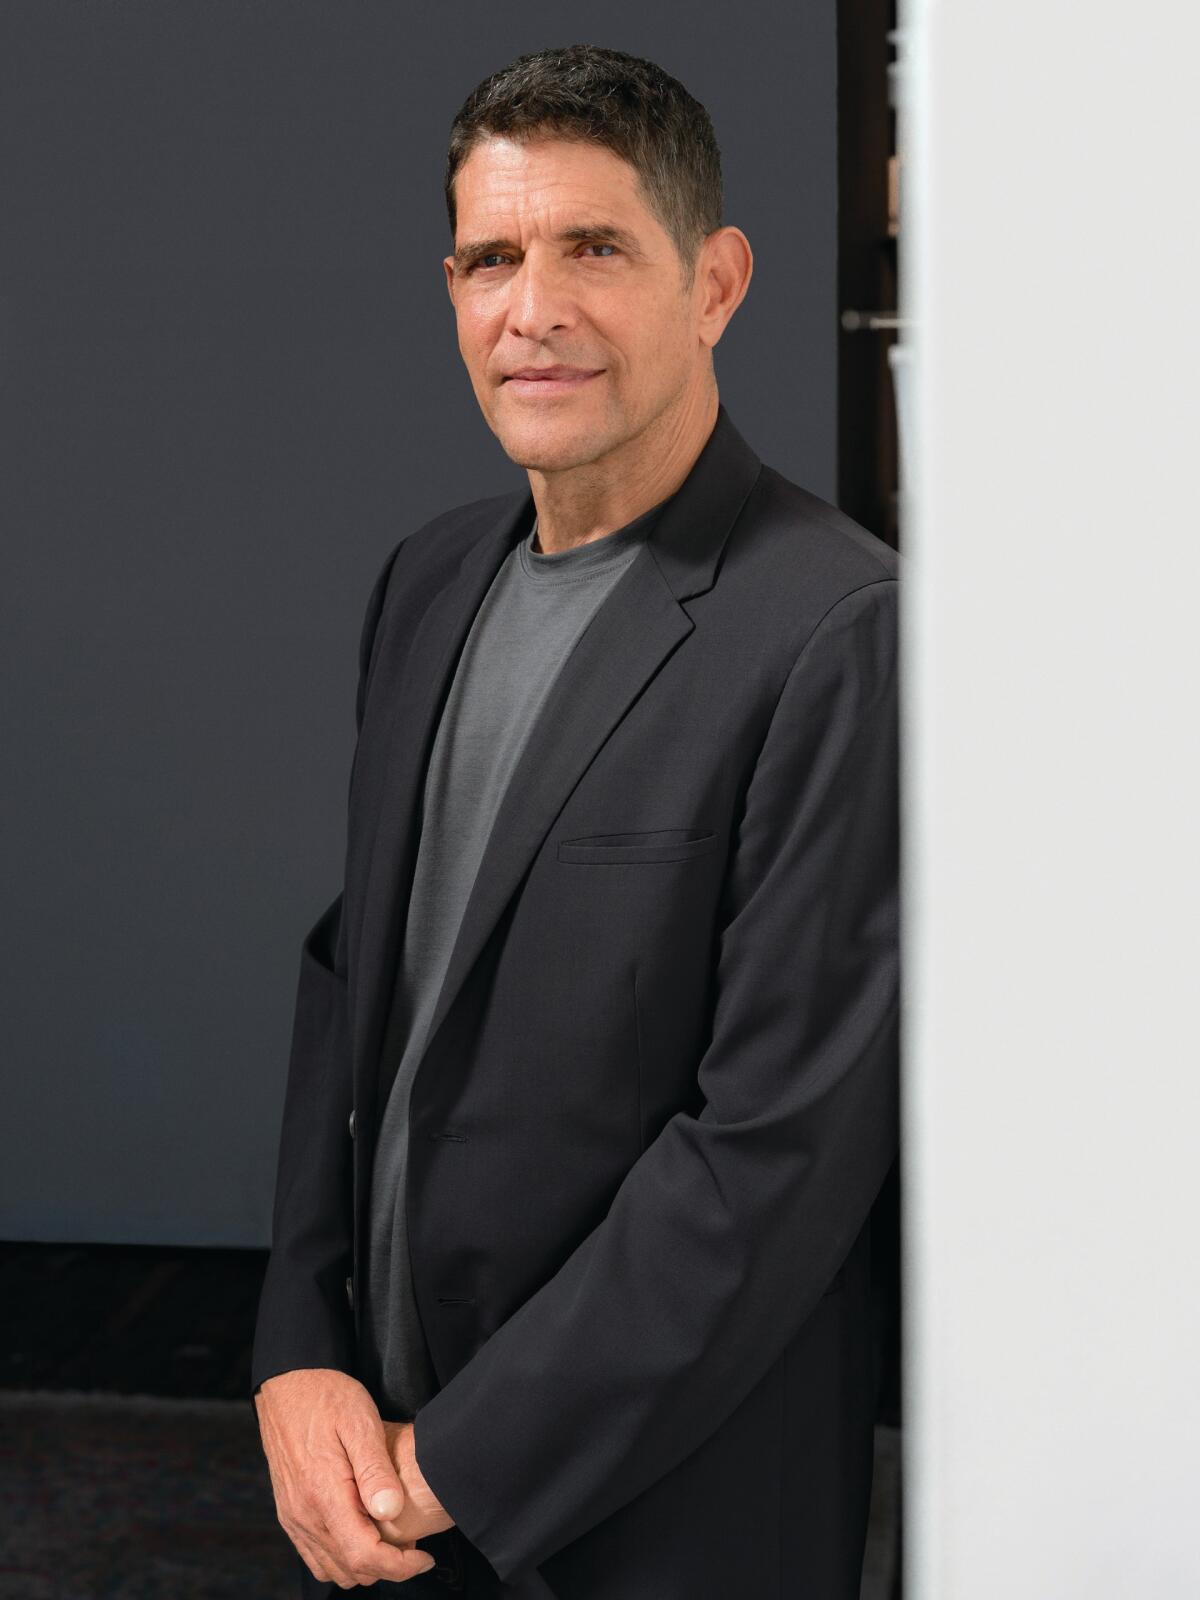 Ein dunkelhaariger Mann in einem dunklen Blazer über einem grauen T-Shirt steht an einer Wand